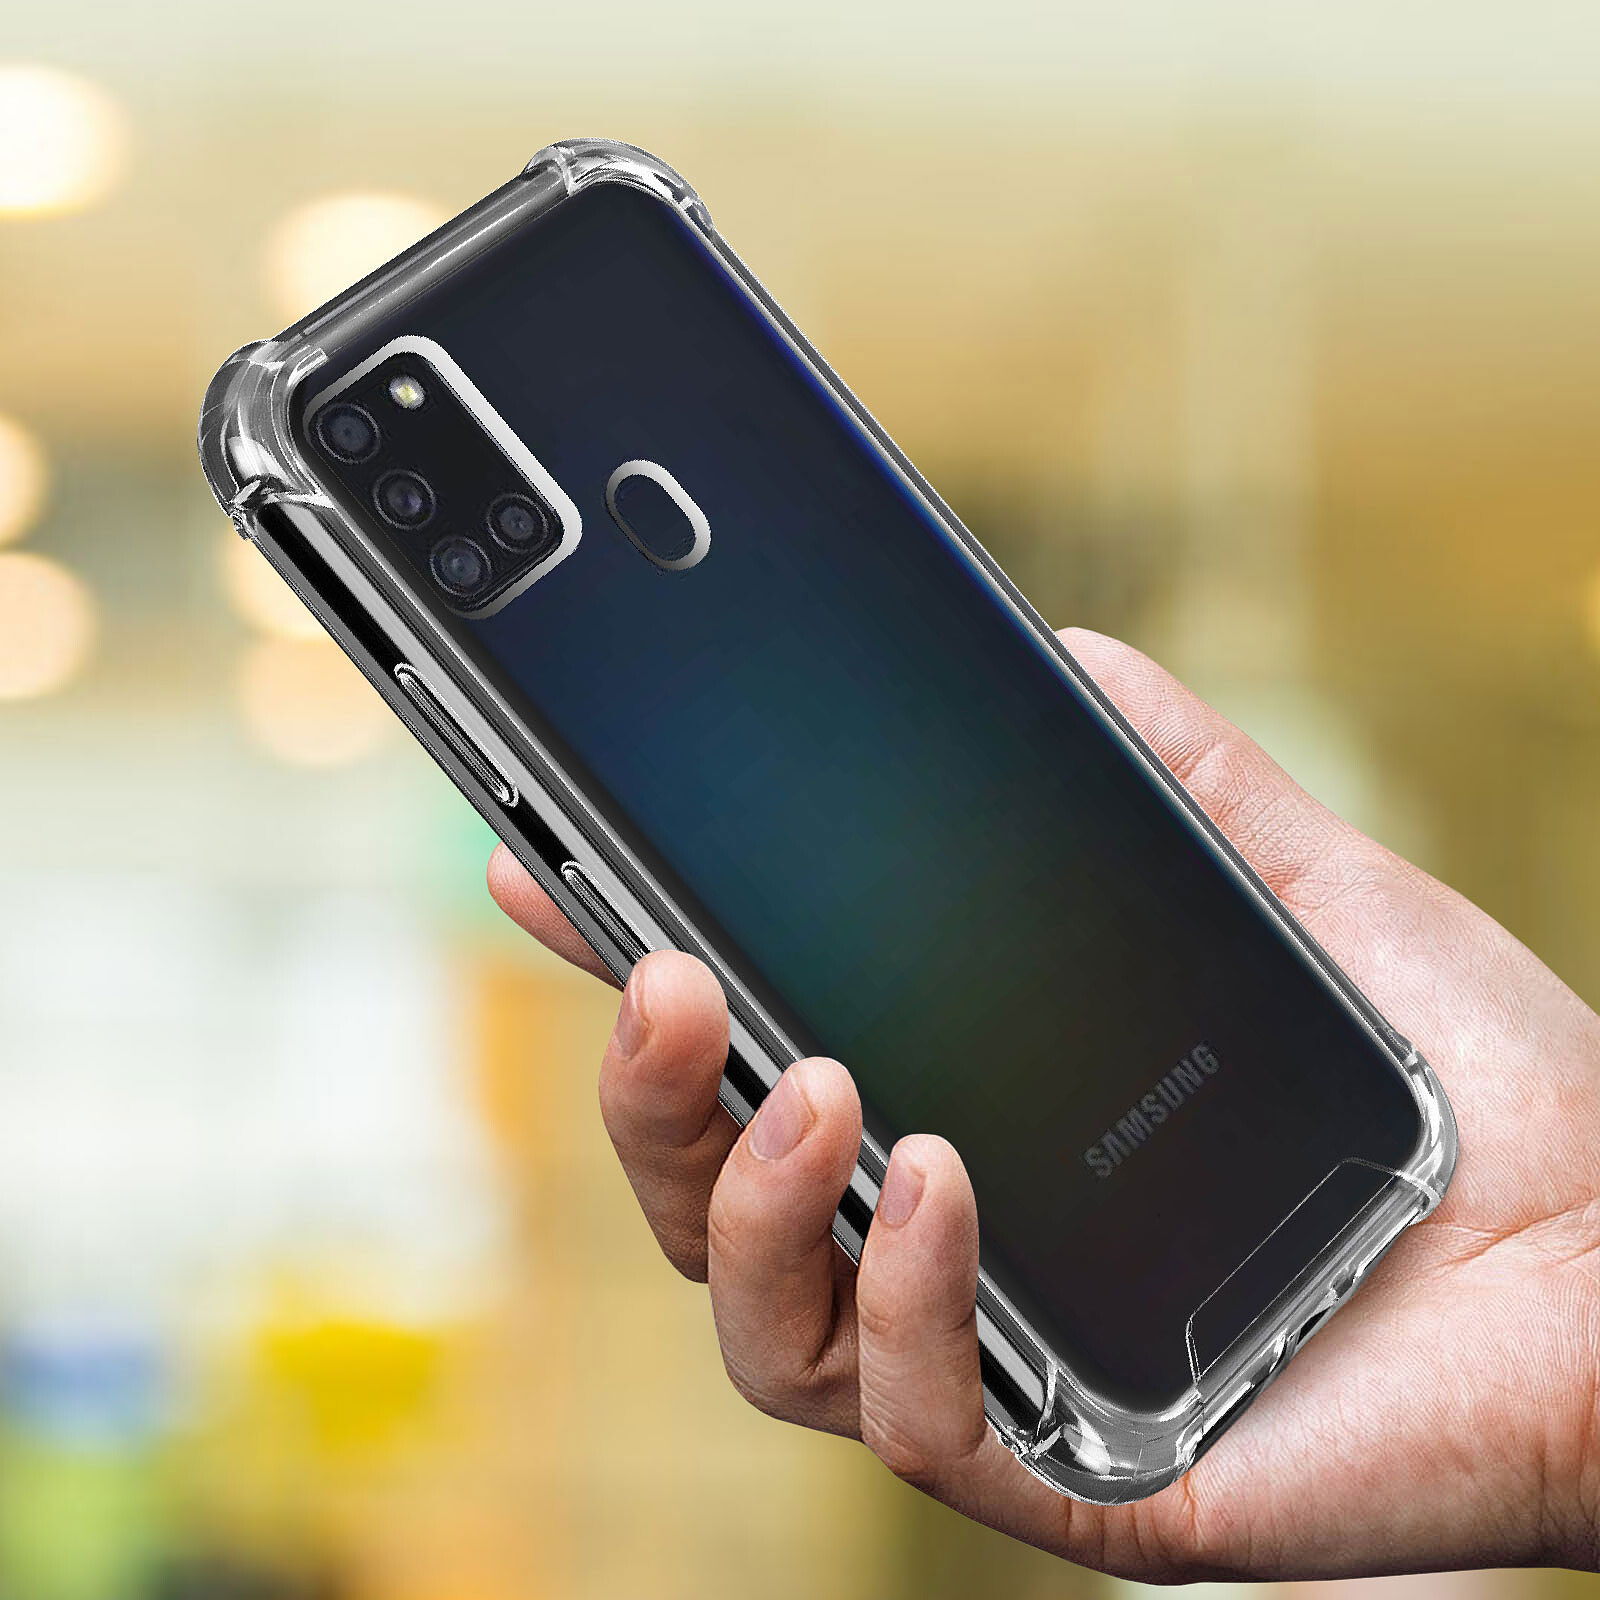 Funda de silicona Samsung Galaxy S22 Ultra negra - Funda de teléfono - LDLC